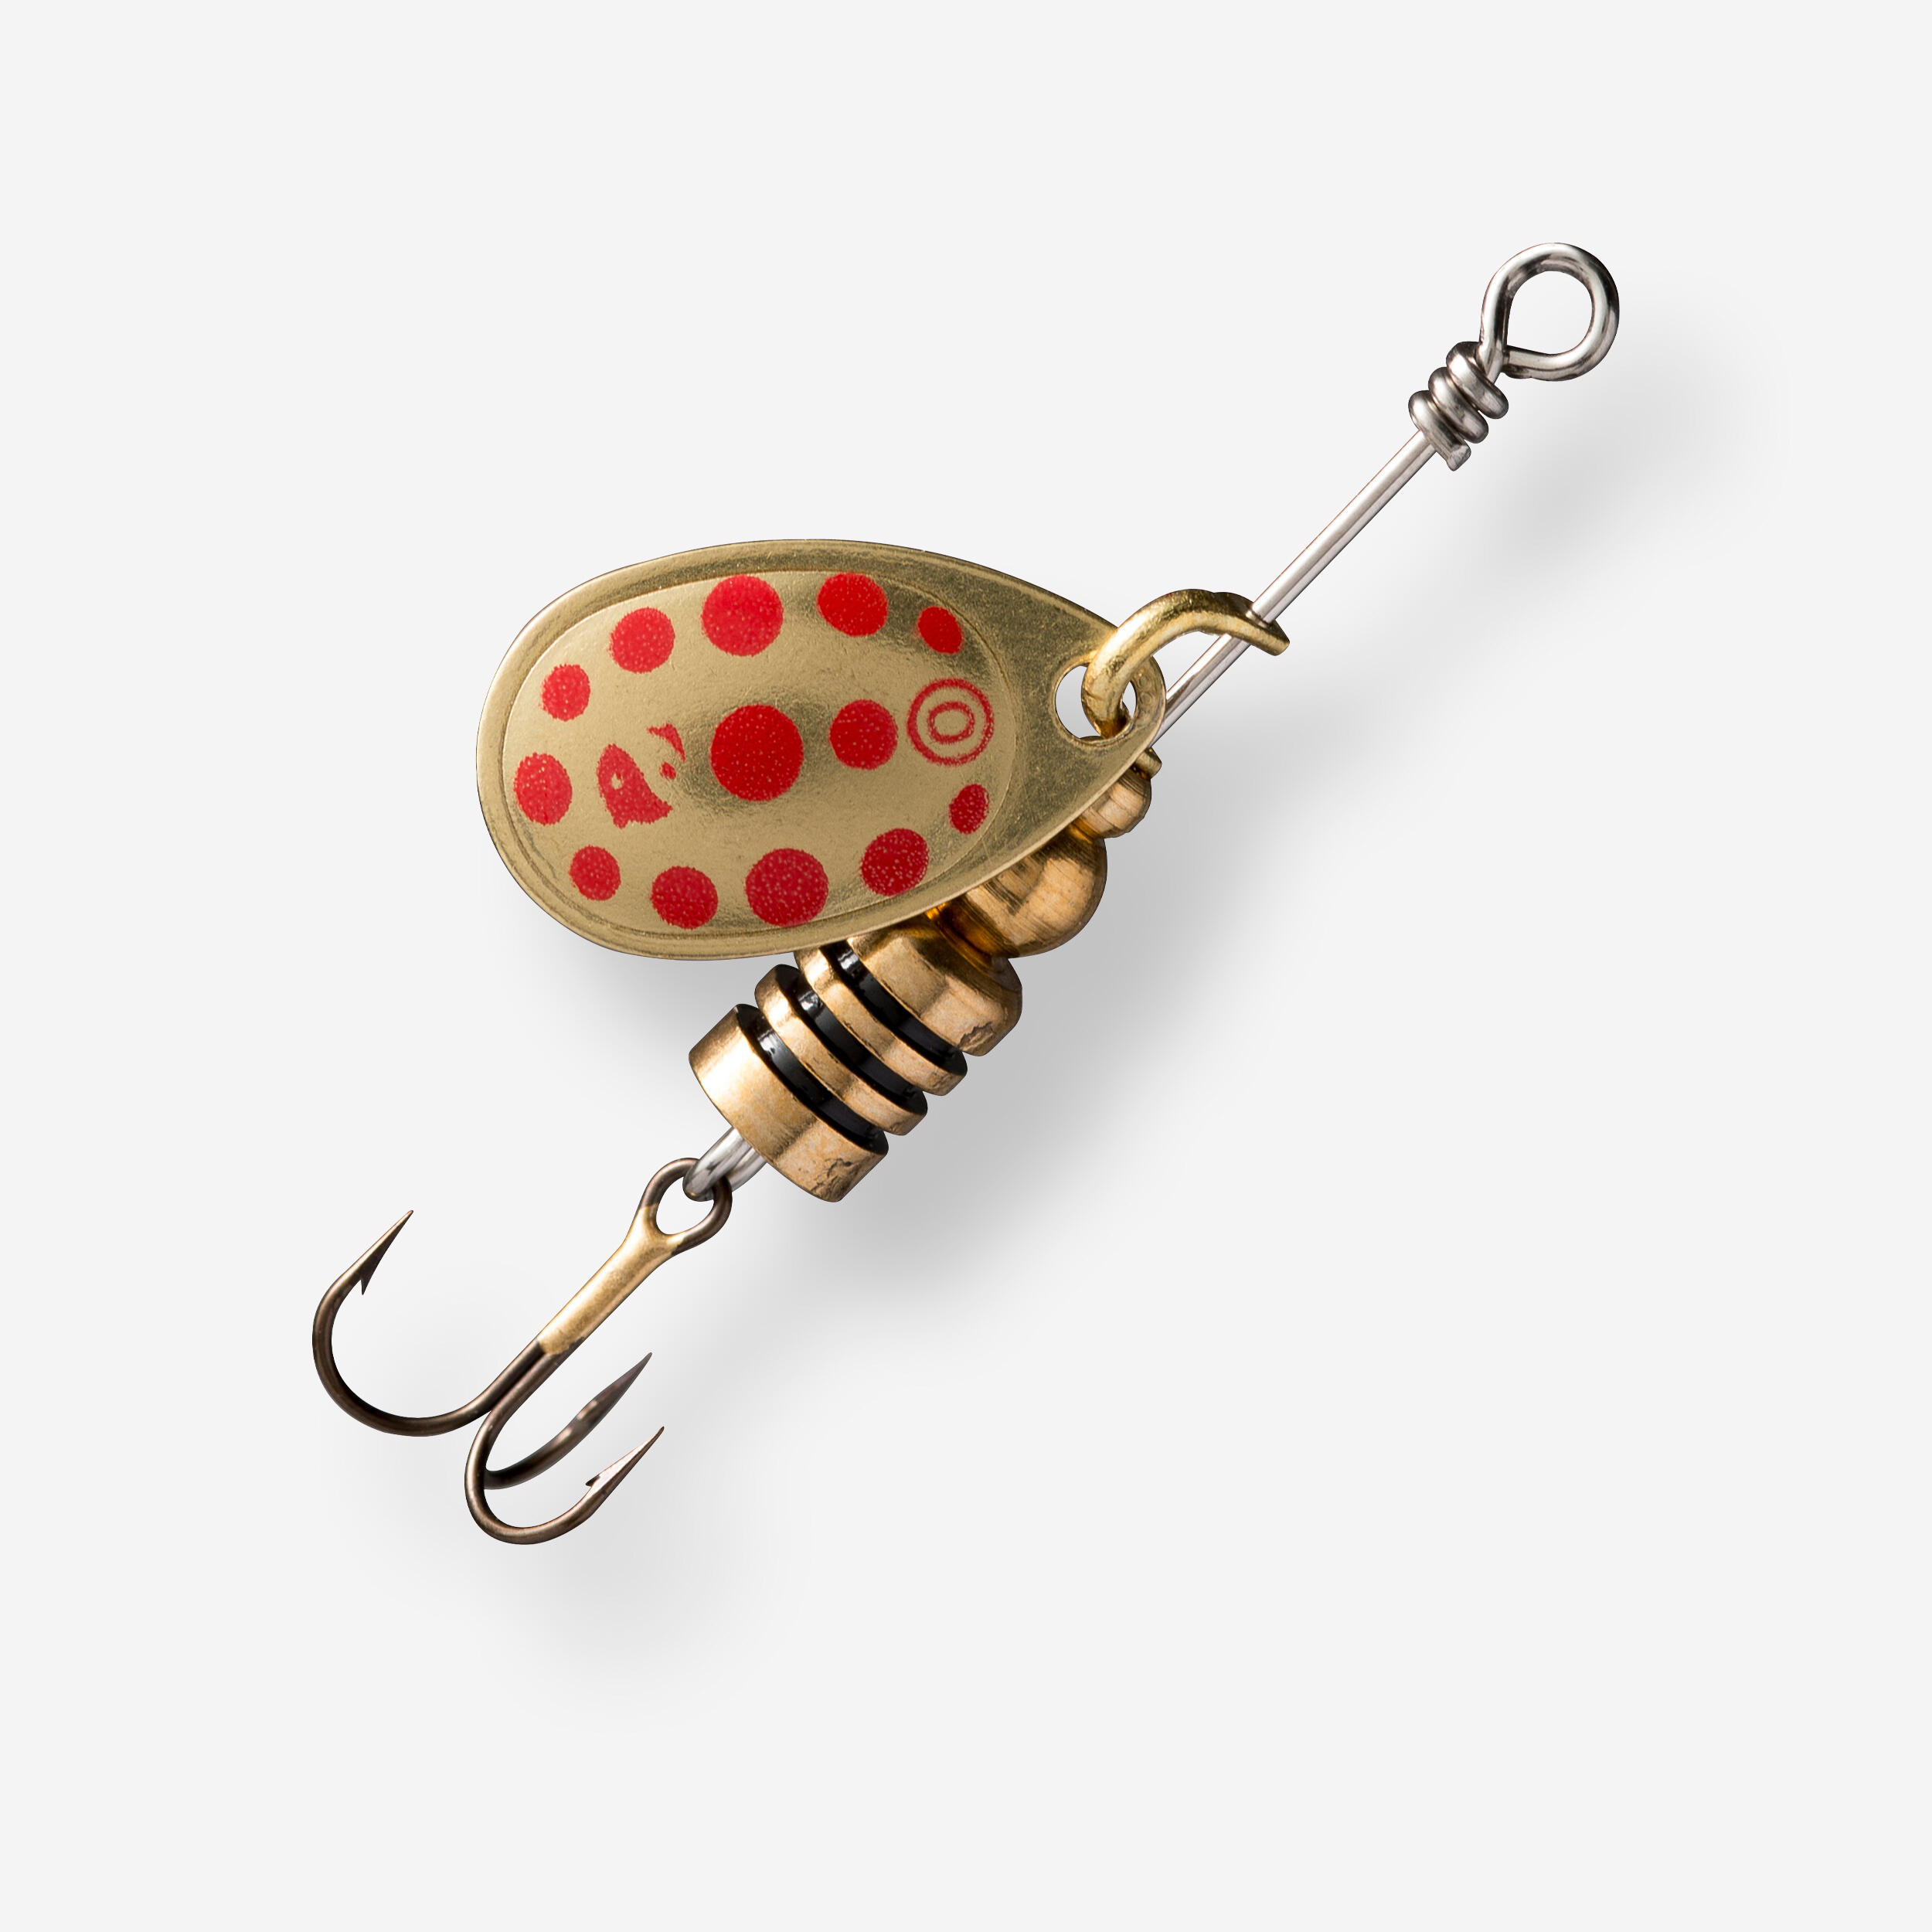 CAPERLAN Rotačný blyskáč na lov dravcov Weta + č. 0 zlatý s červenými bodkami okrová